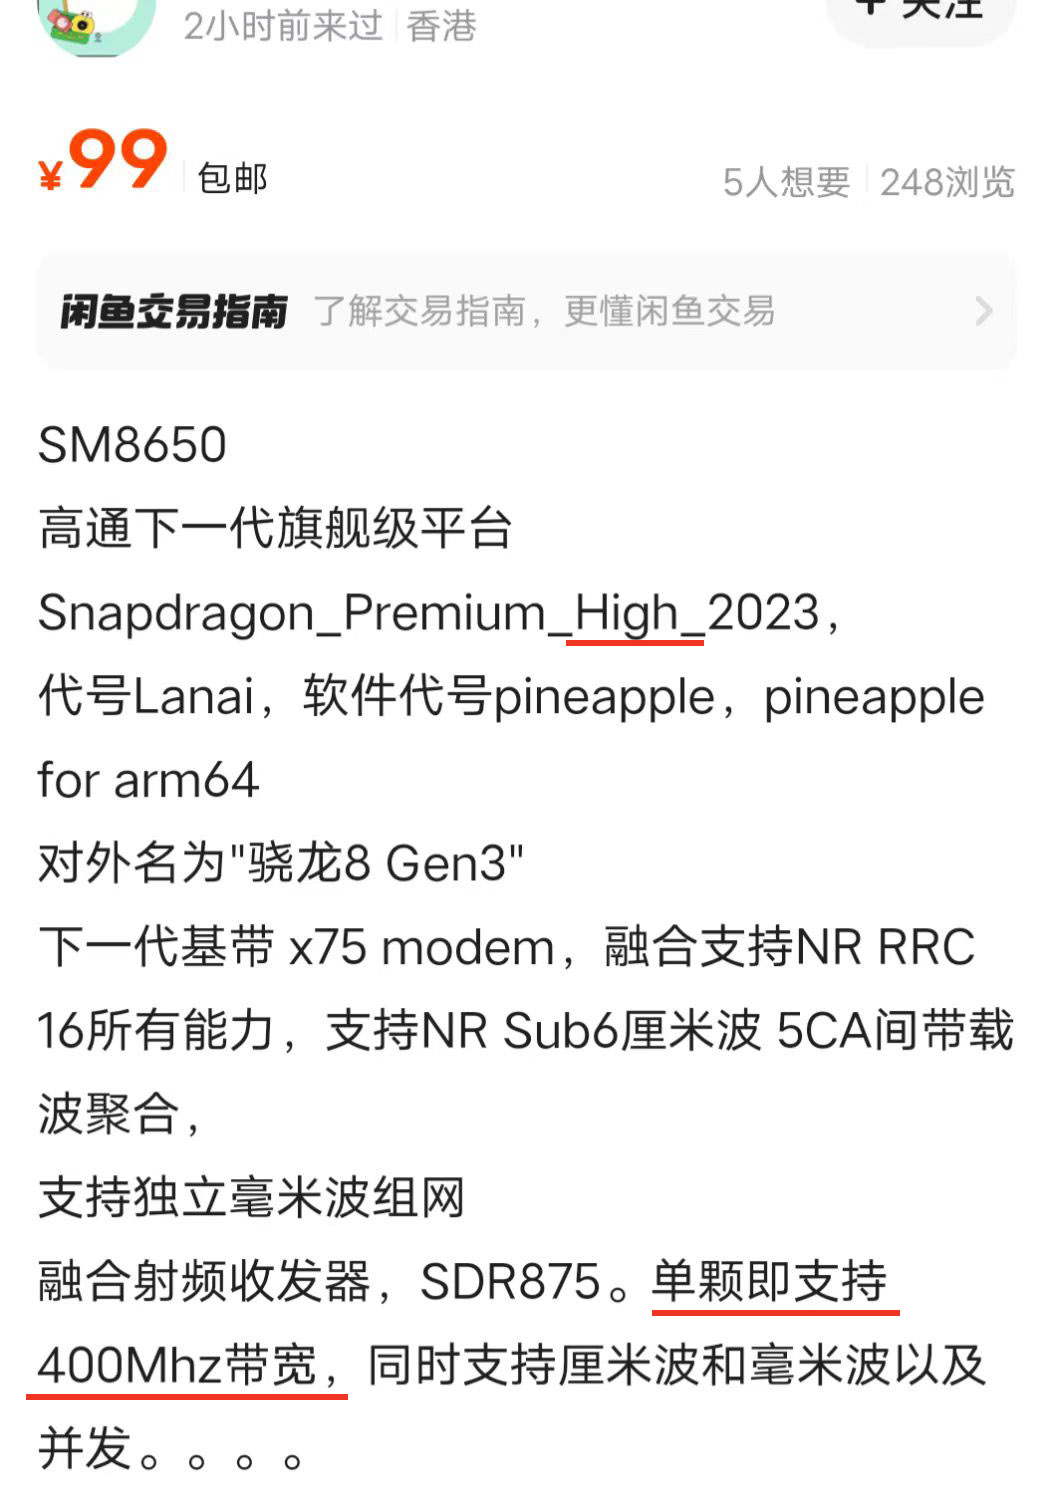 SM8650-QRD.jpg